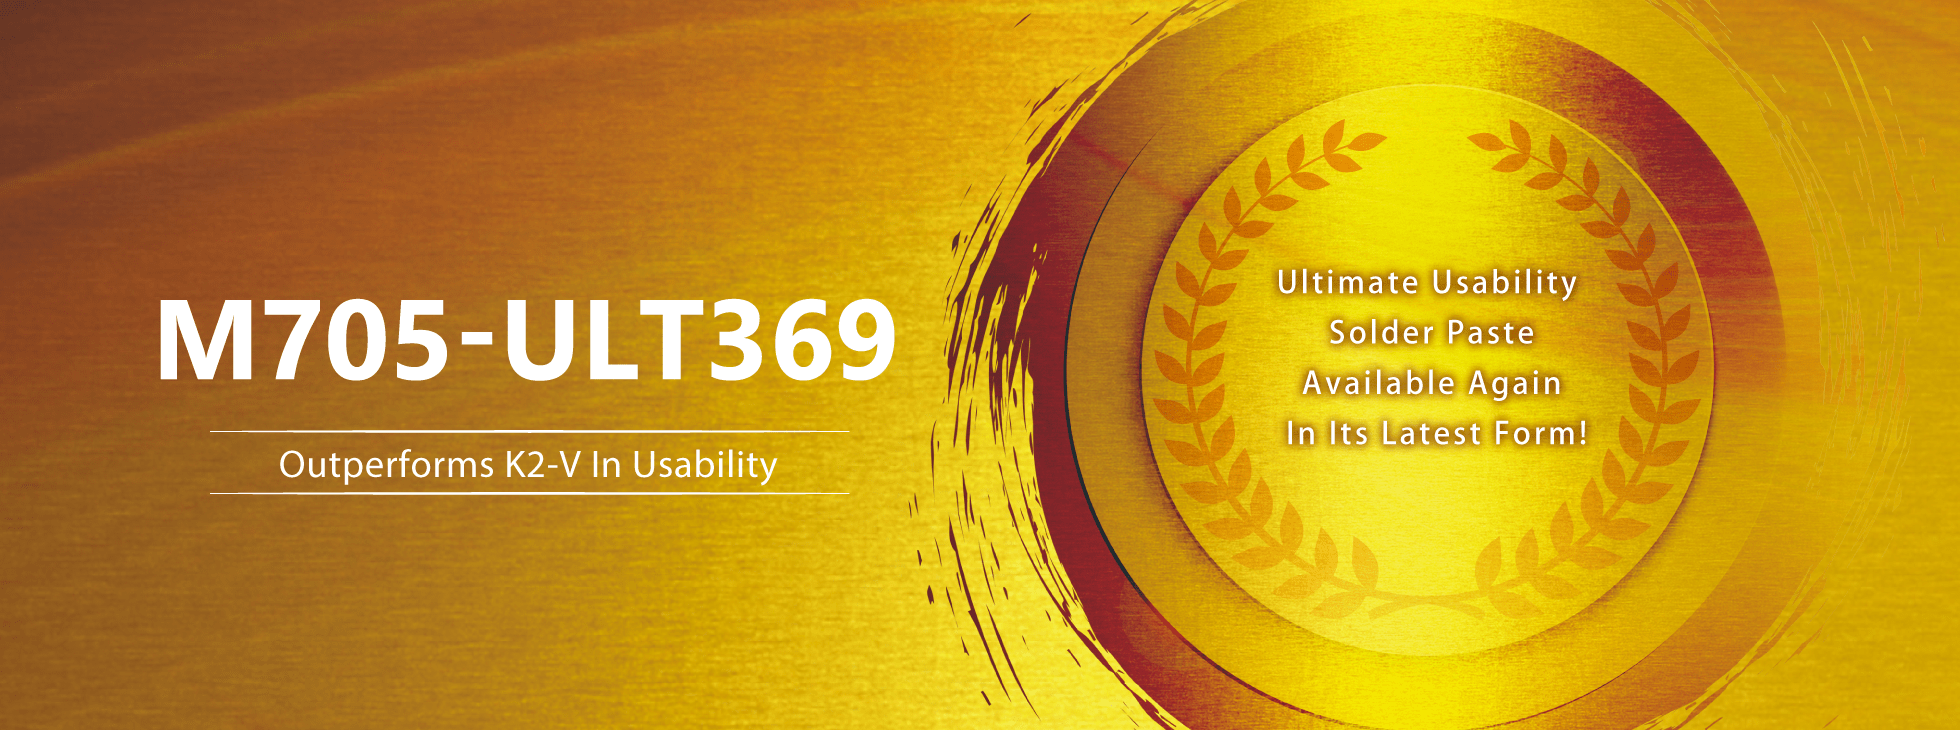 Ultimate Usability Solder Paste M705-ULT369